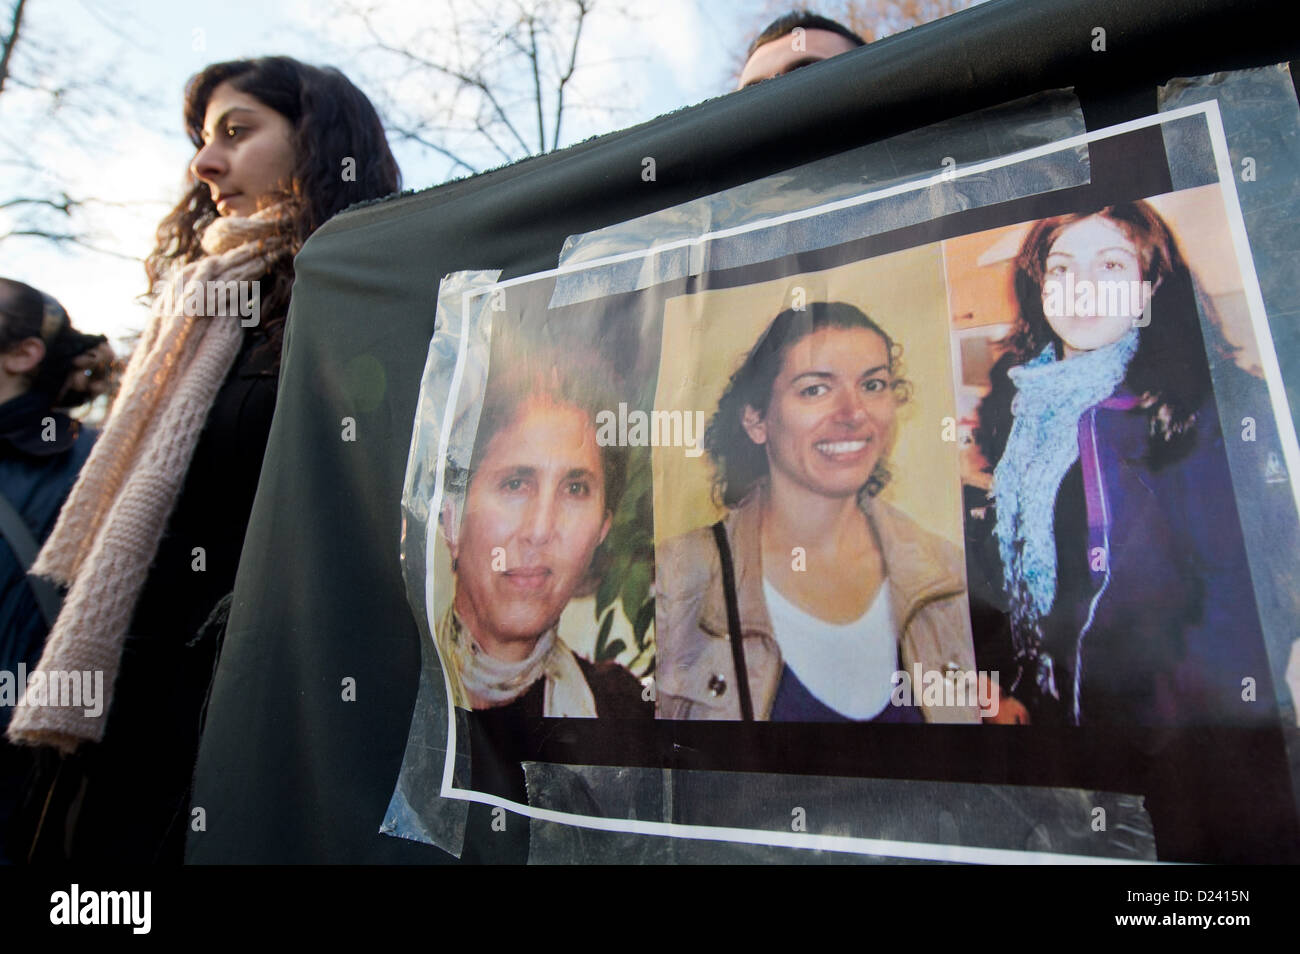 Manifestanti curdi demande una rapida risoluzione degli omicidi di tre donne militanti curdi a Parigi davanti al consolato turco in Francoforte sul Meno, Germania, 11 gennaio 2013. La dimostrazione è stata assicurata dalla polizia. Foto: BORIS ROESSLER Foto Stock